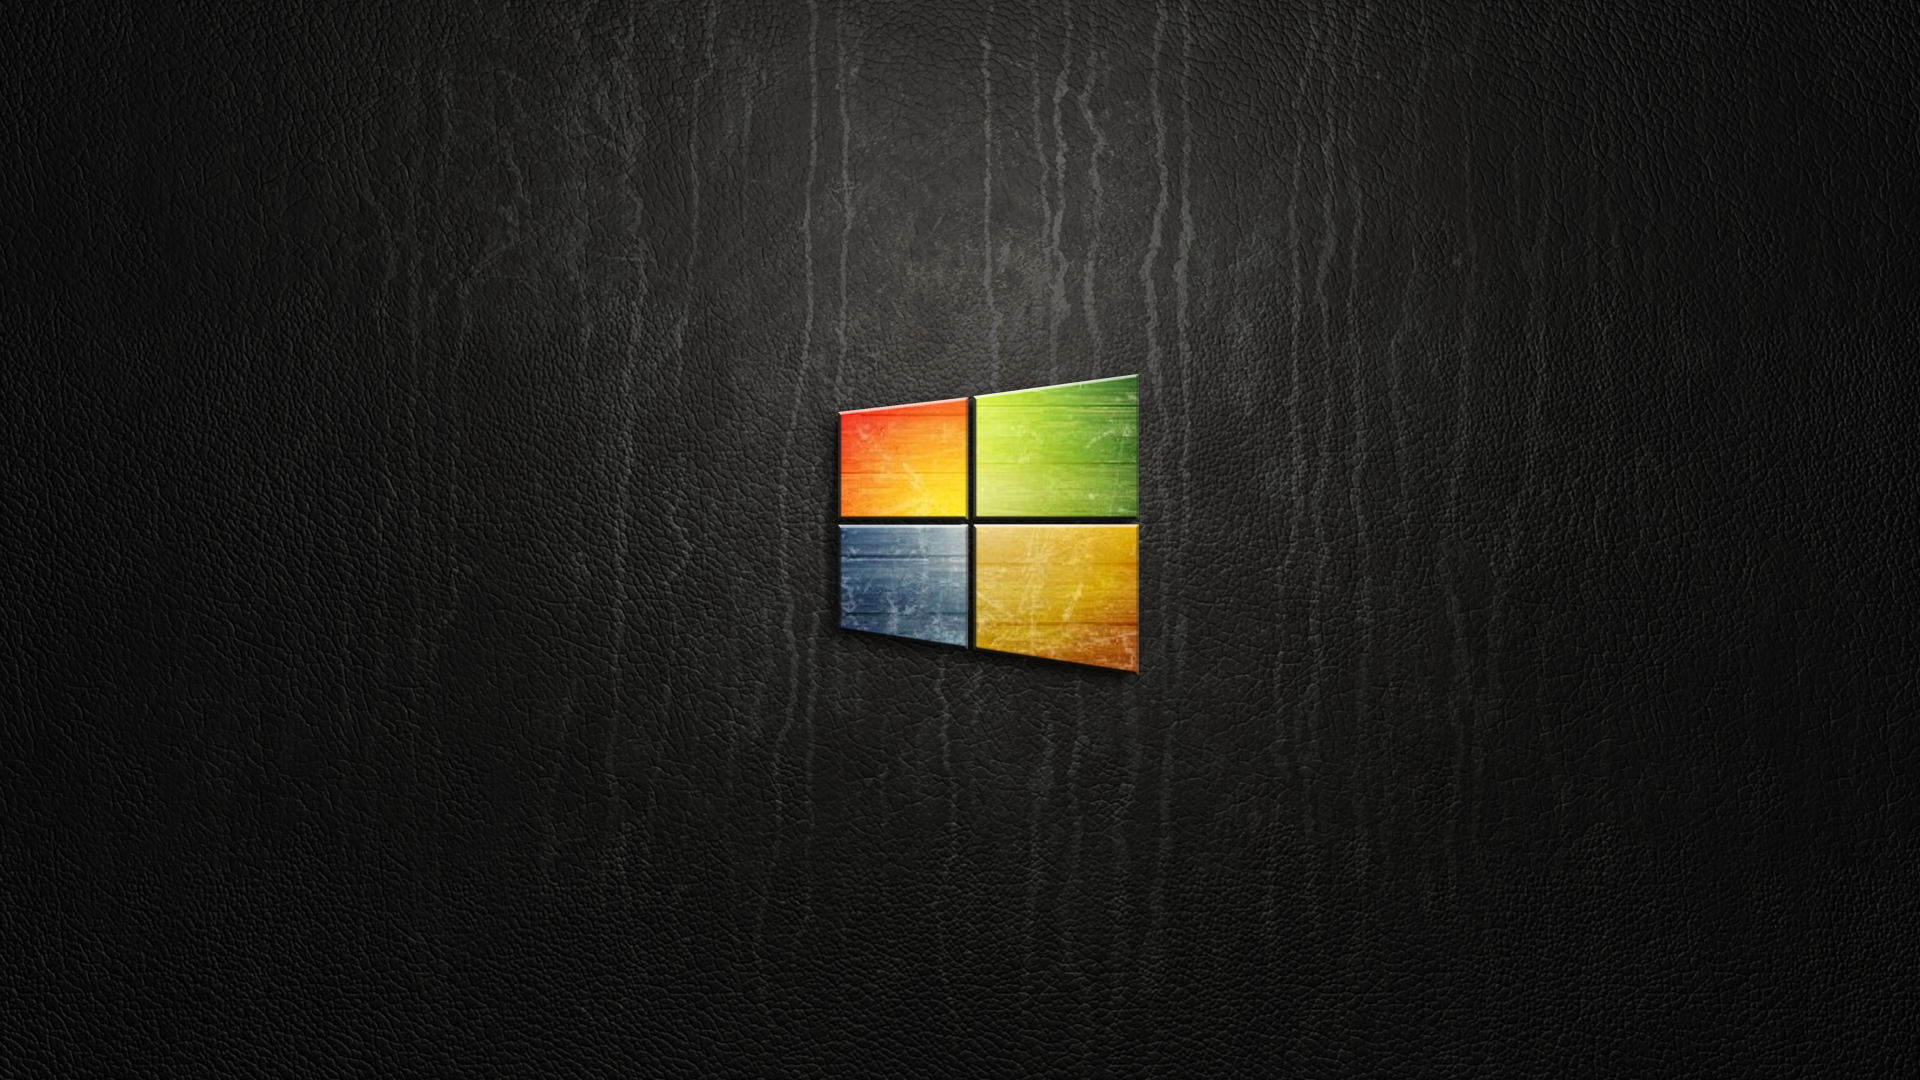 Windows 高清壁纸 桌面背景 19x1080 Id 5061 Wallpaper Abyss